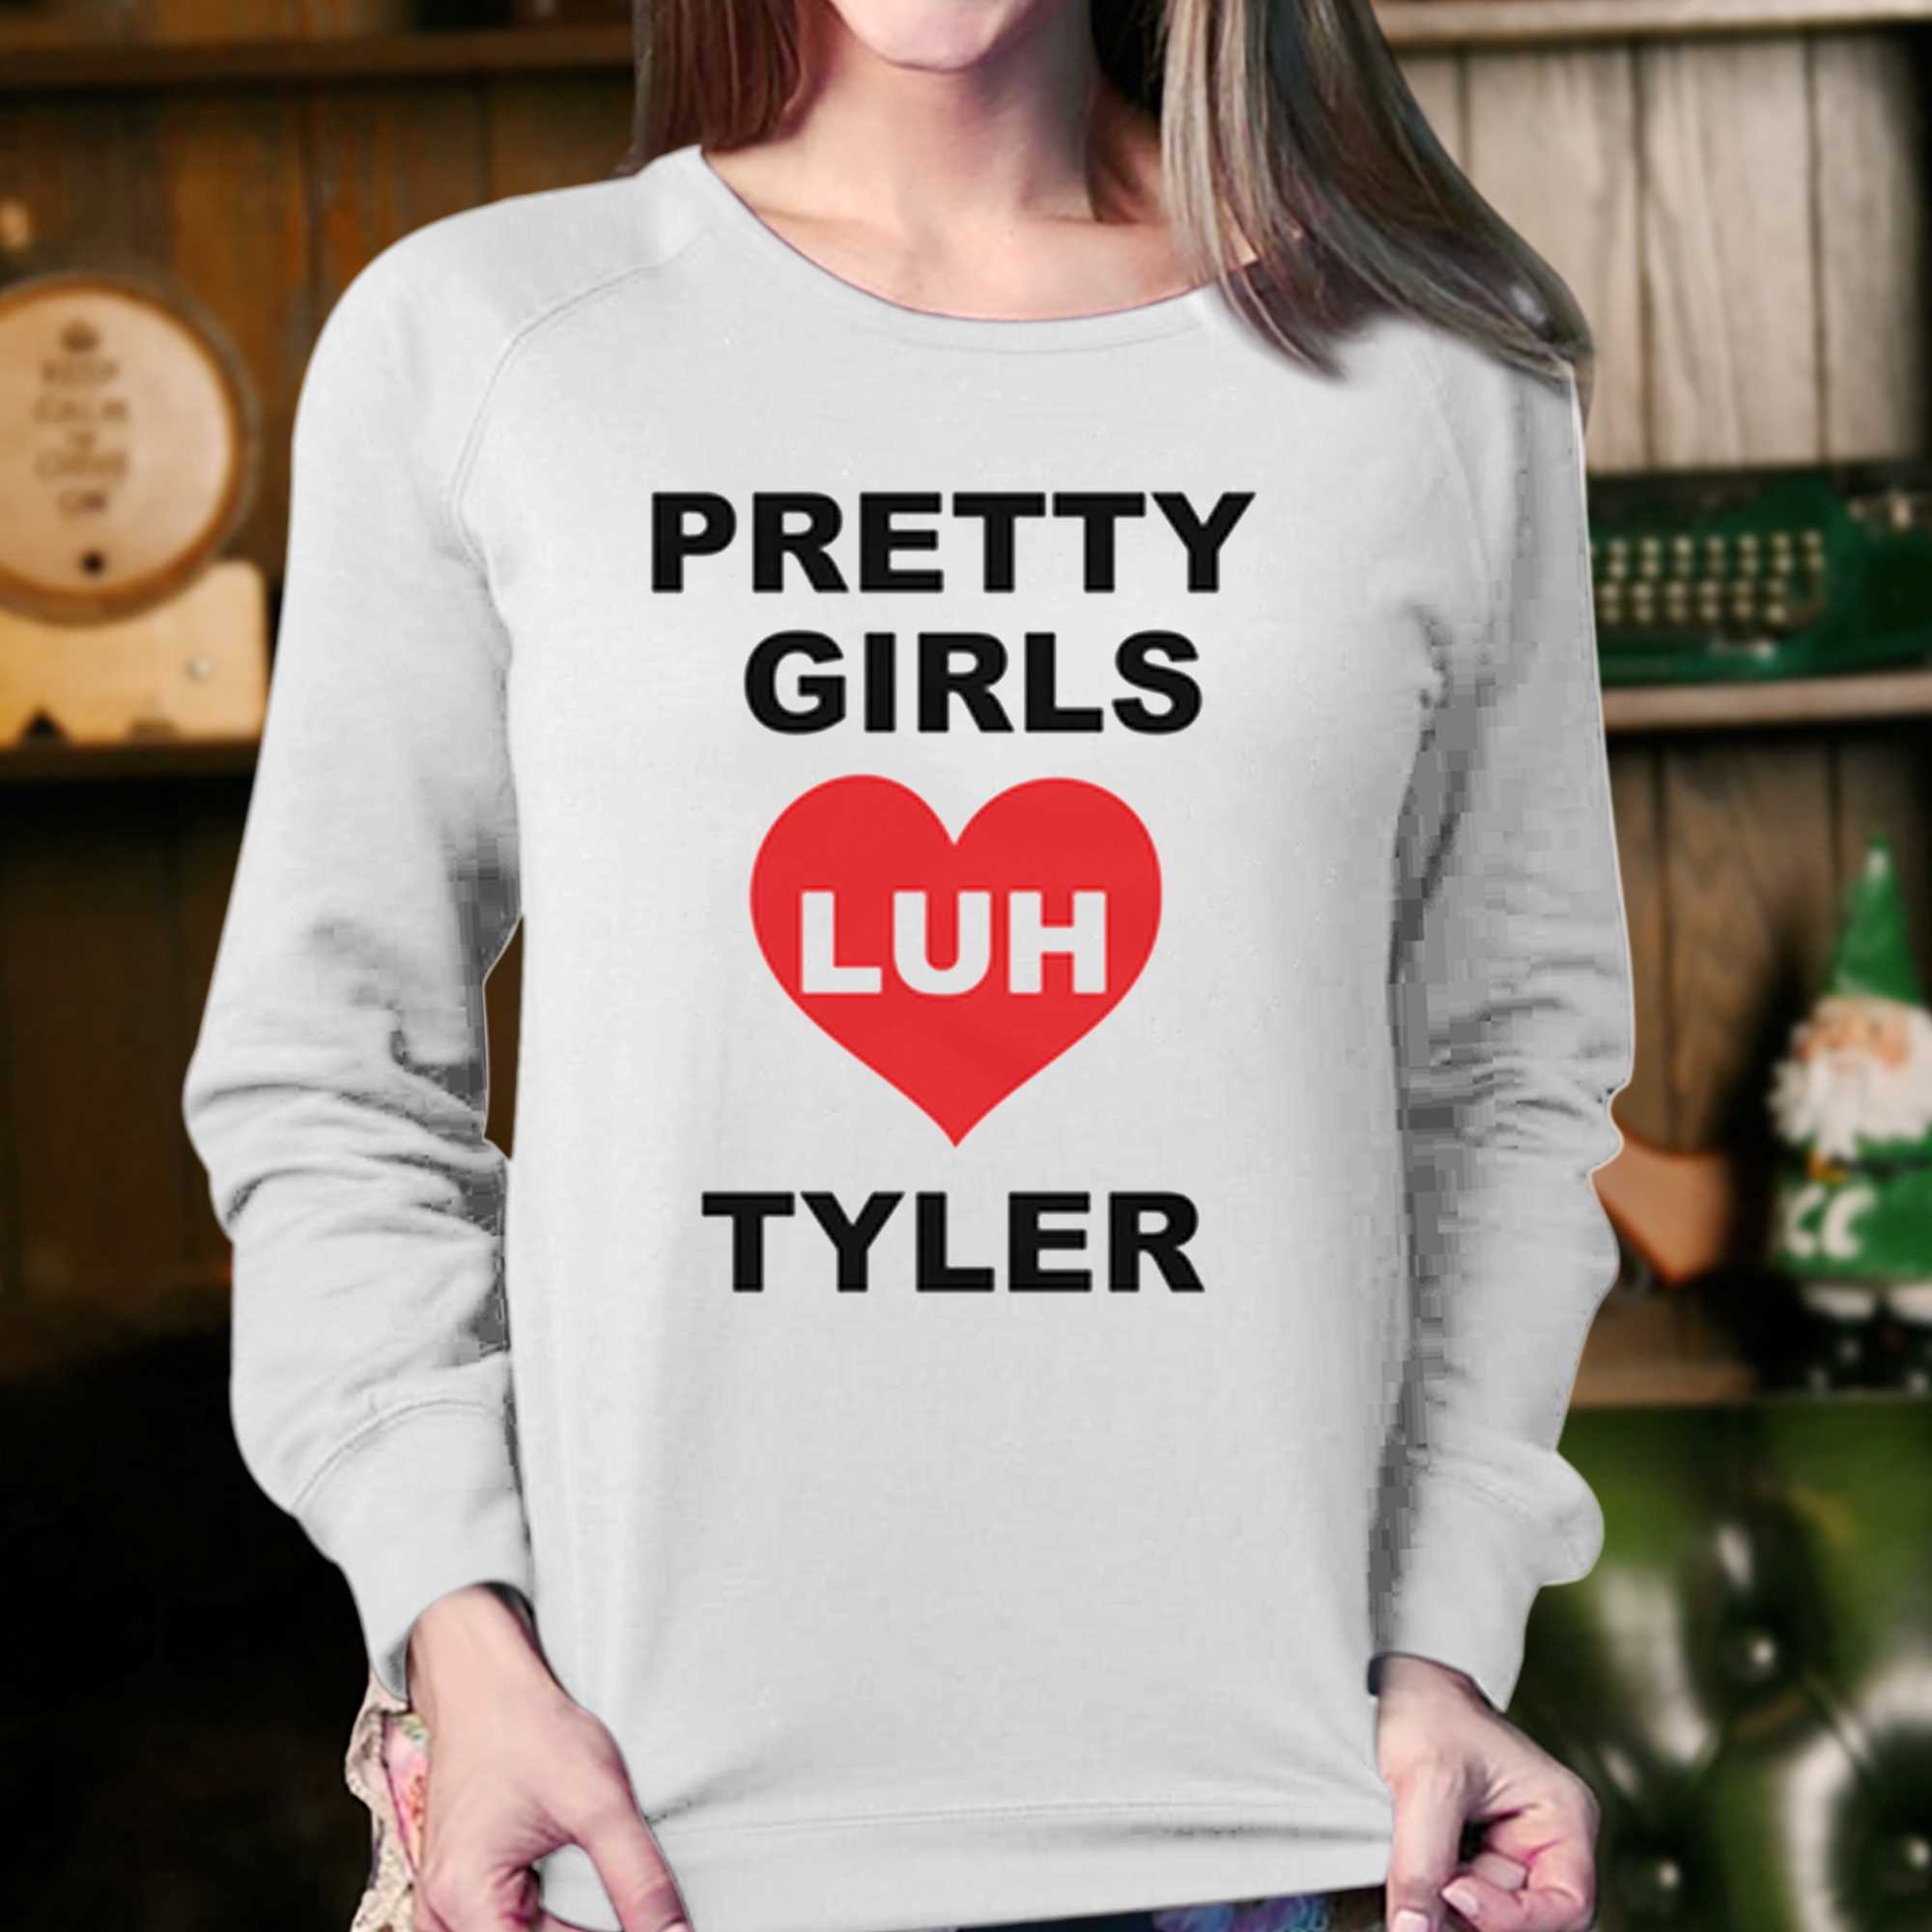 Pretty Girls Luh Tyler T-shirt 